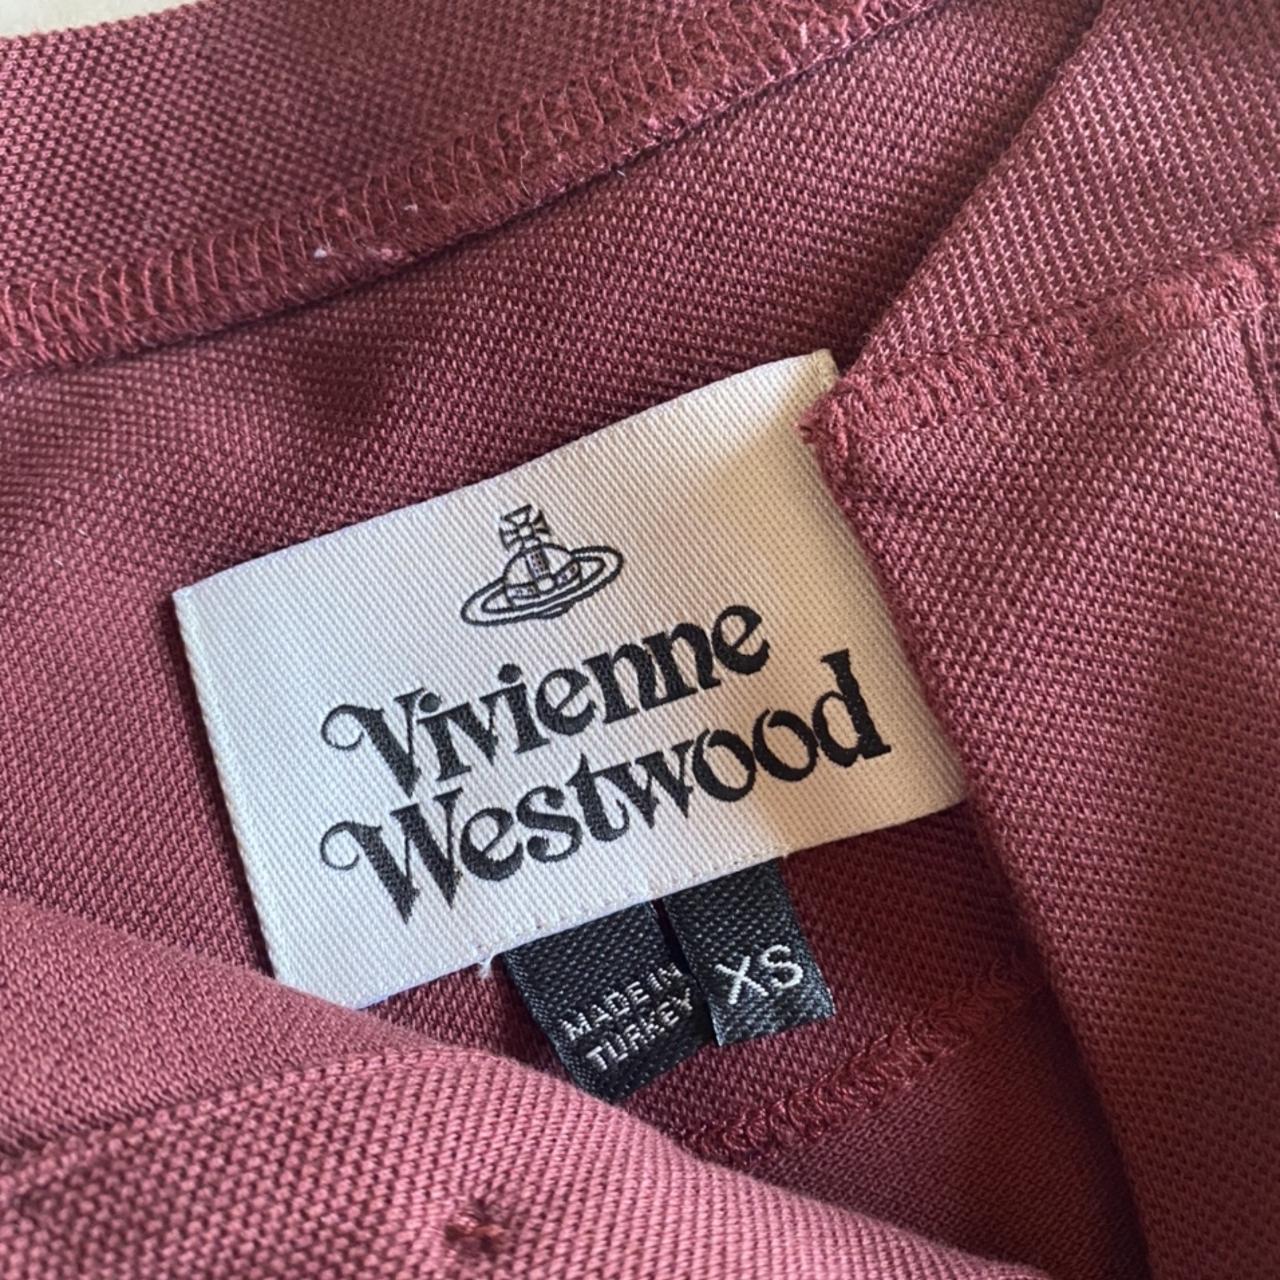 Vivienne Westwood Men's Polo-shirts | Depop